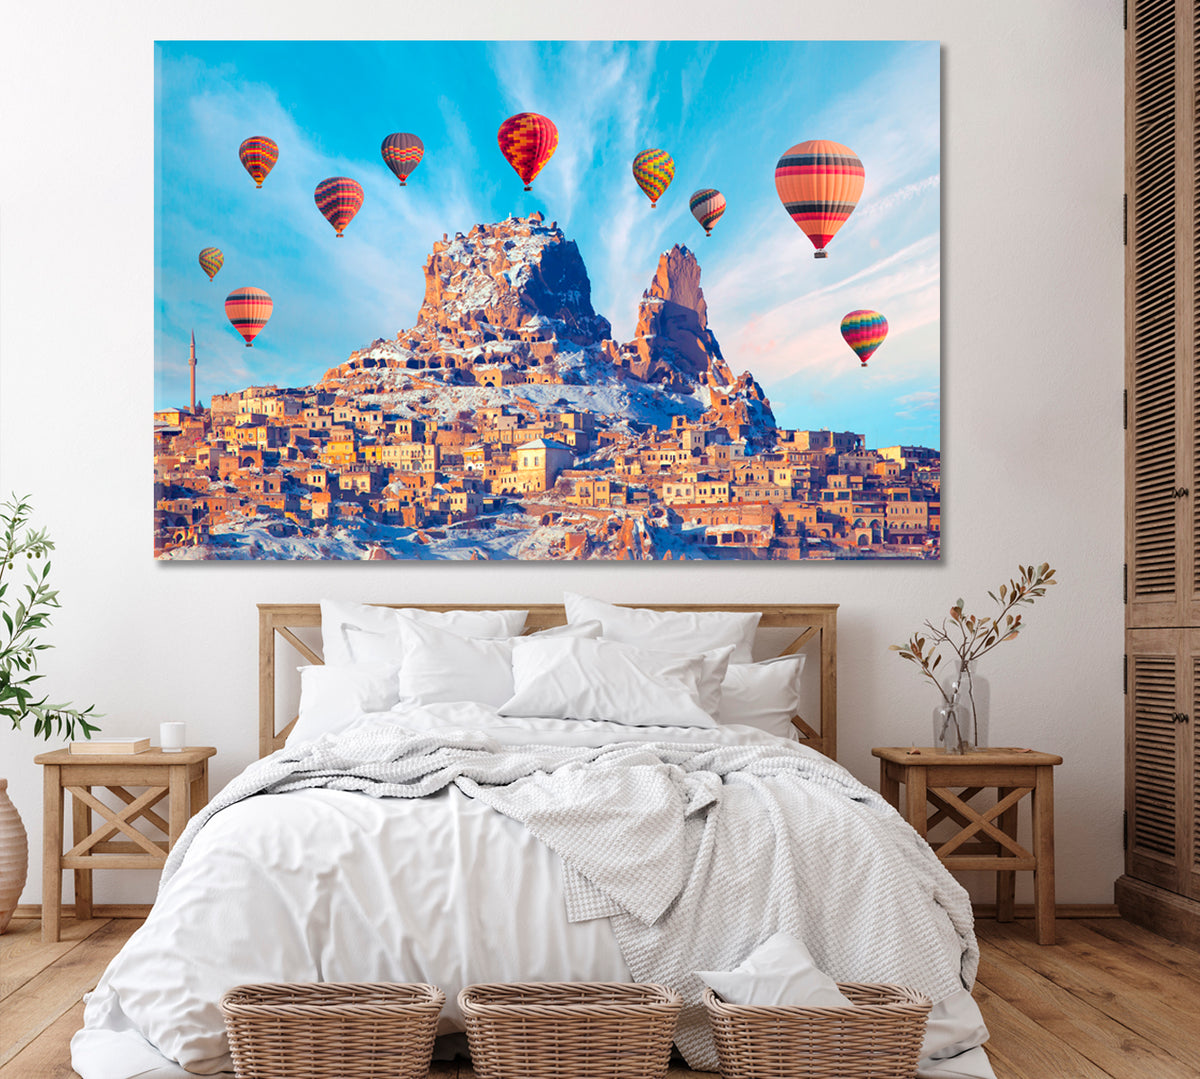 Hot Air Balloons over Cappadocia Turkey Canvas Print ArtLexy 1 Panel 24"x16" inches 